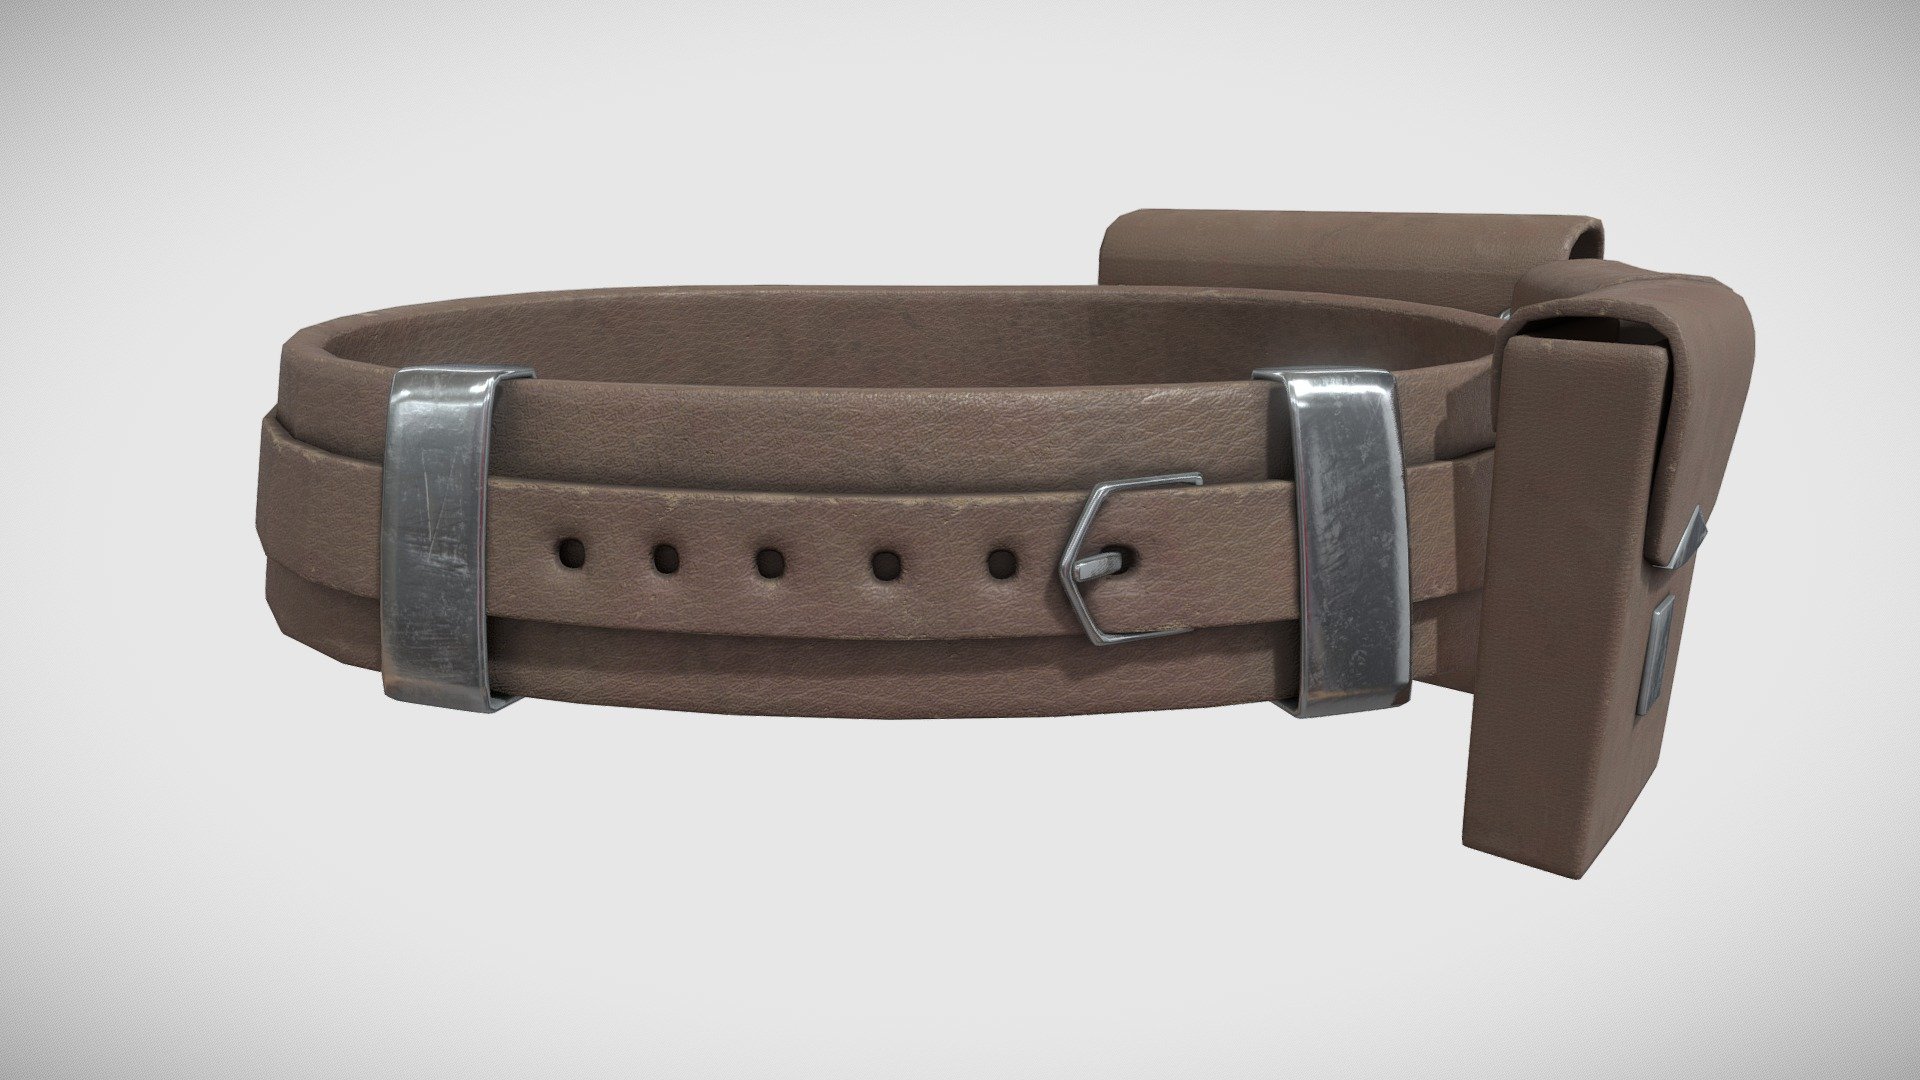 Belt 3D modeling - Belt - 3D model by TeddyCG 3d model